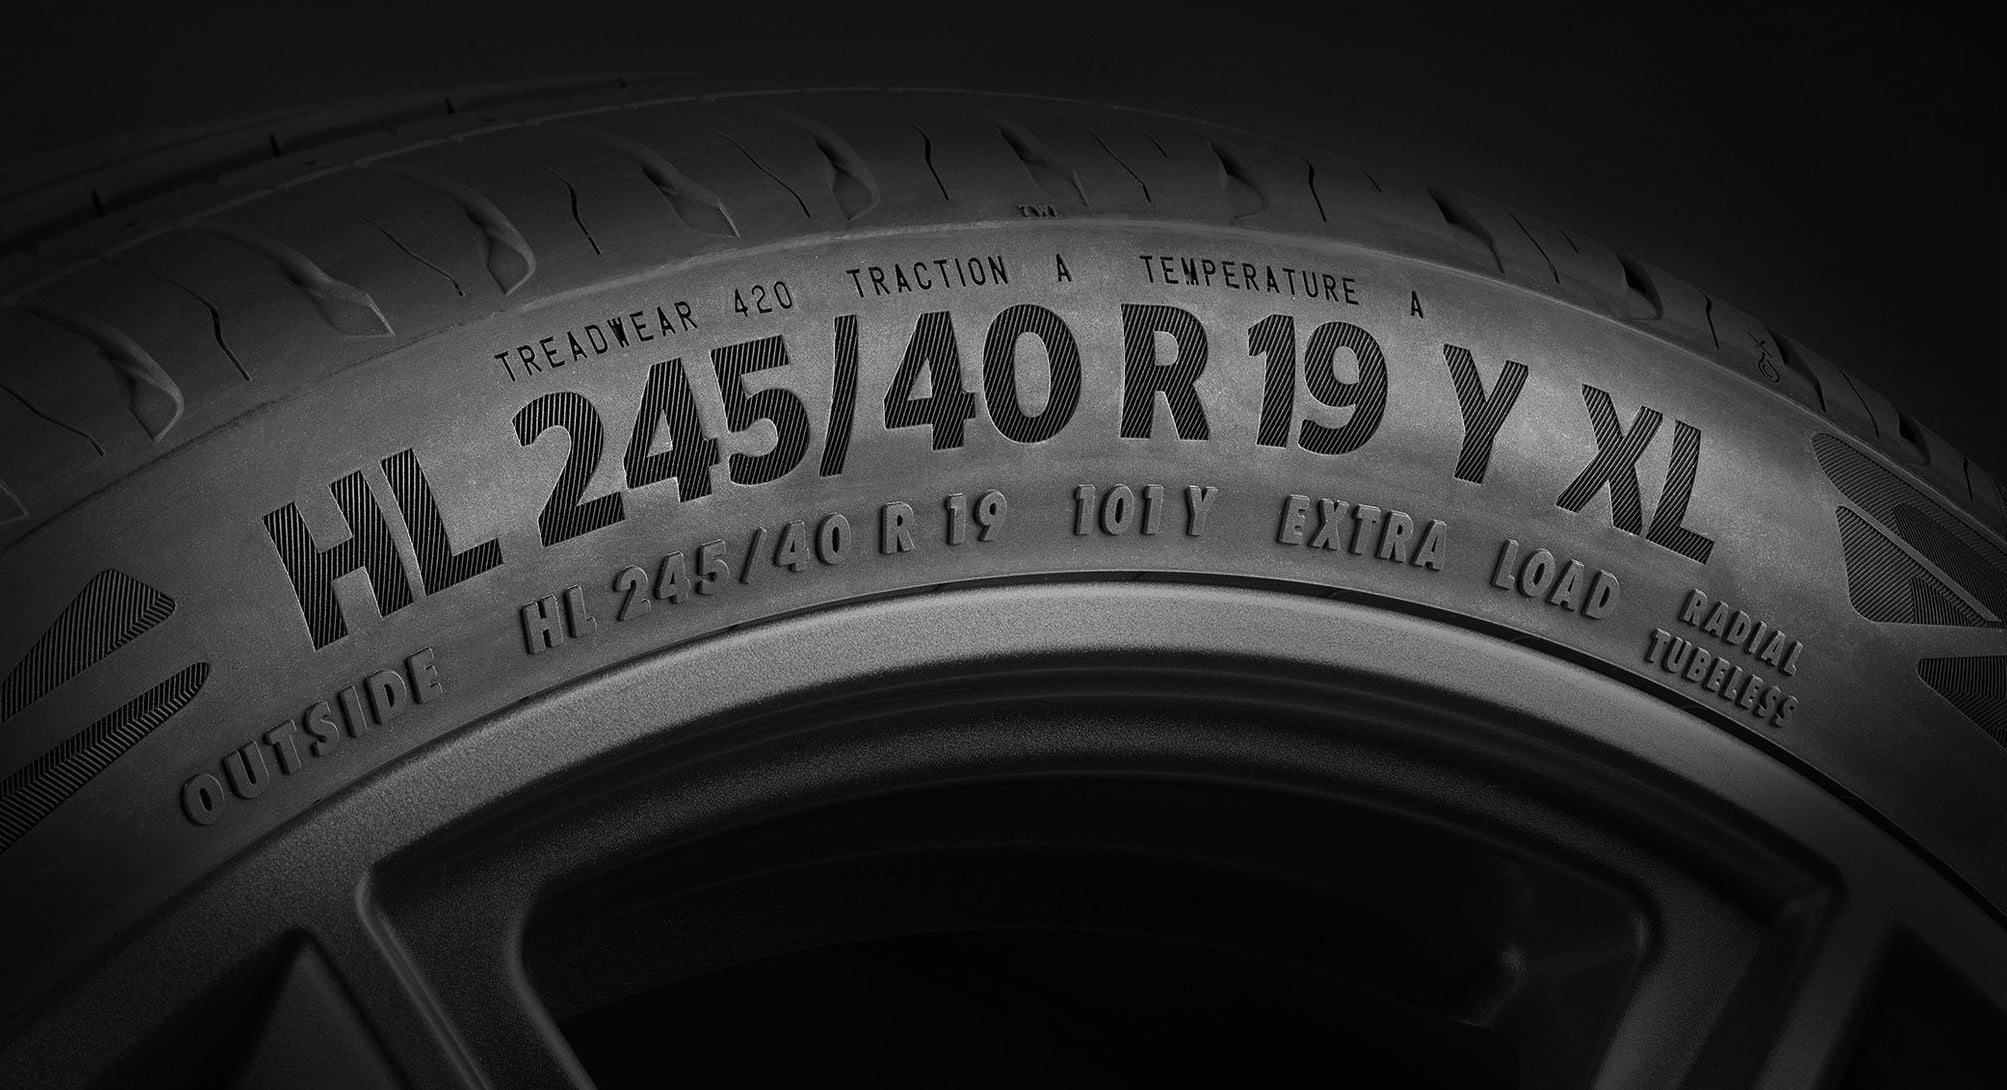 (foto em close da lateral de um pneu, mostrando em foco as medidas descritas no pneu)